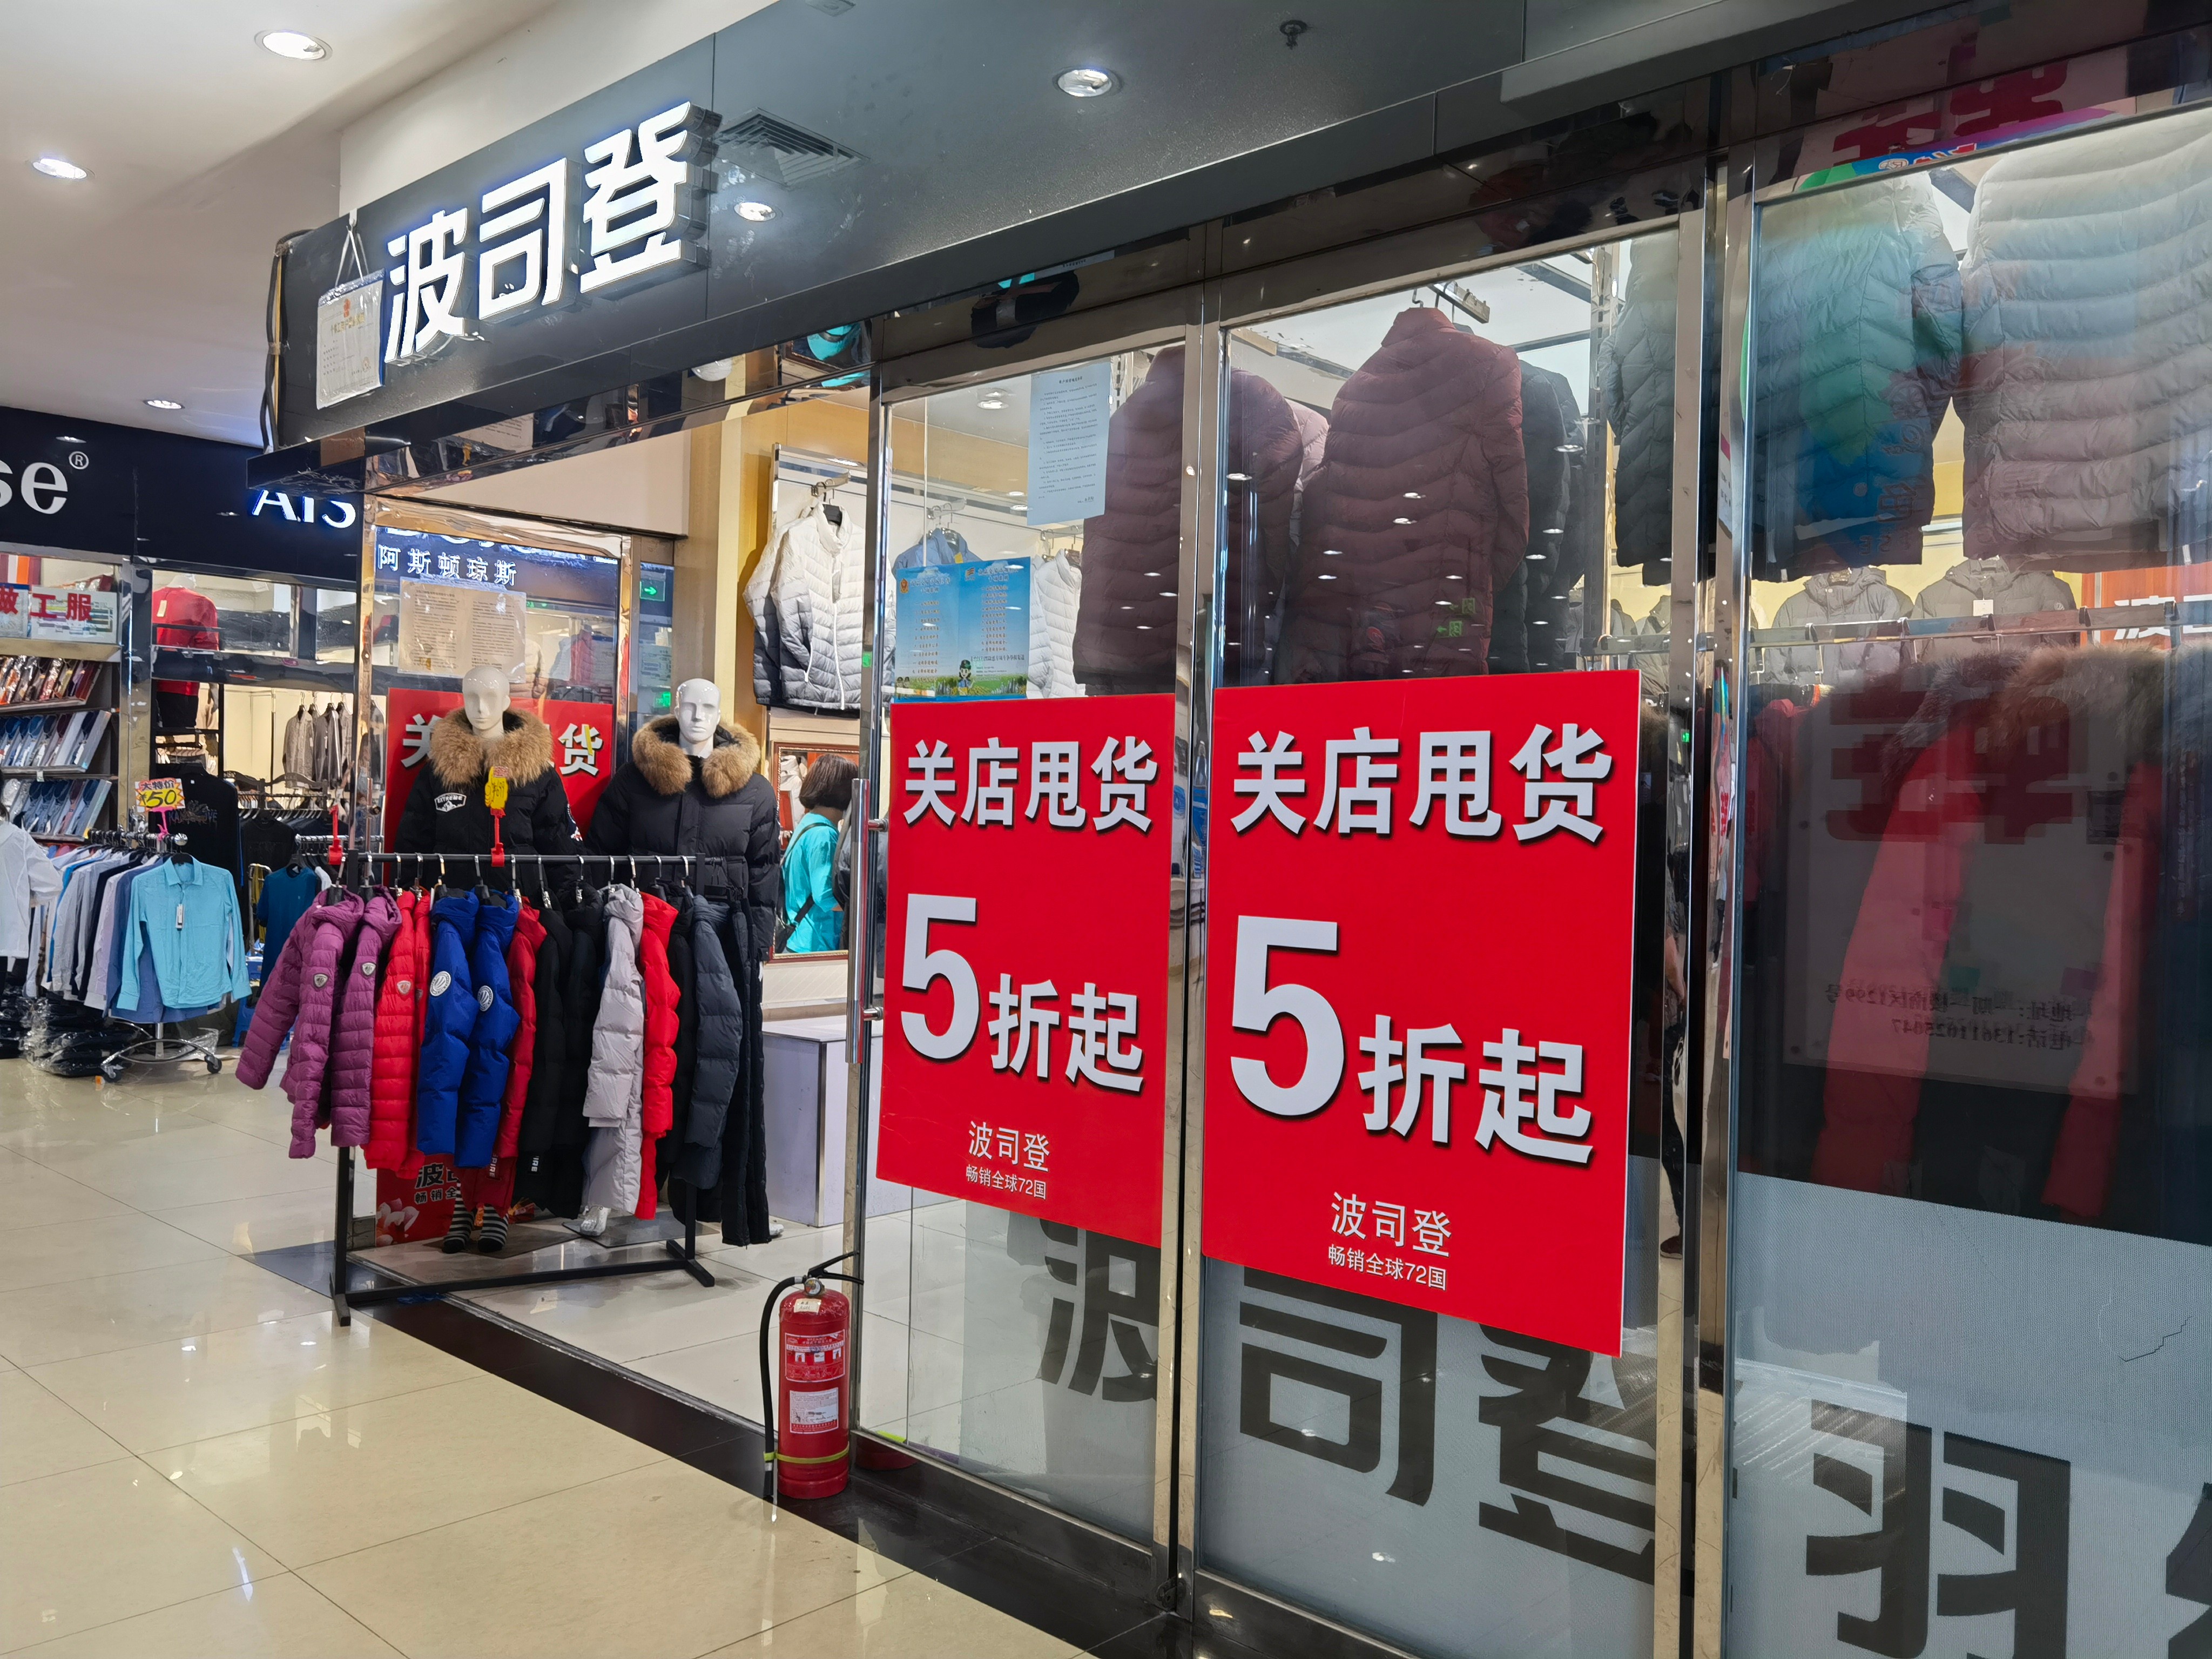 23年历史的北京大红门服装商贸城下月底关停，市民忙淘货